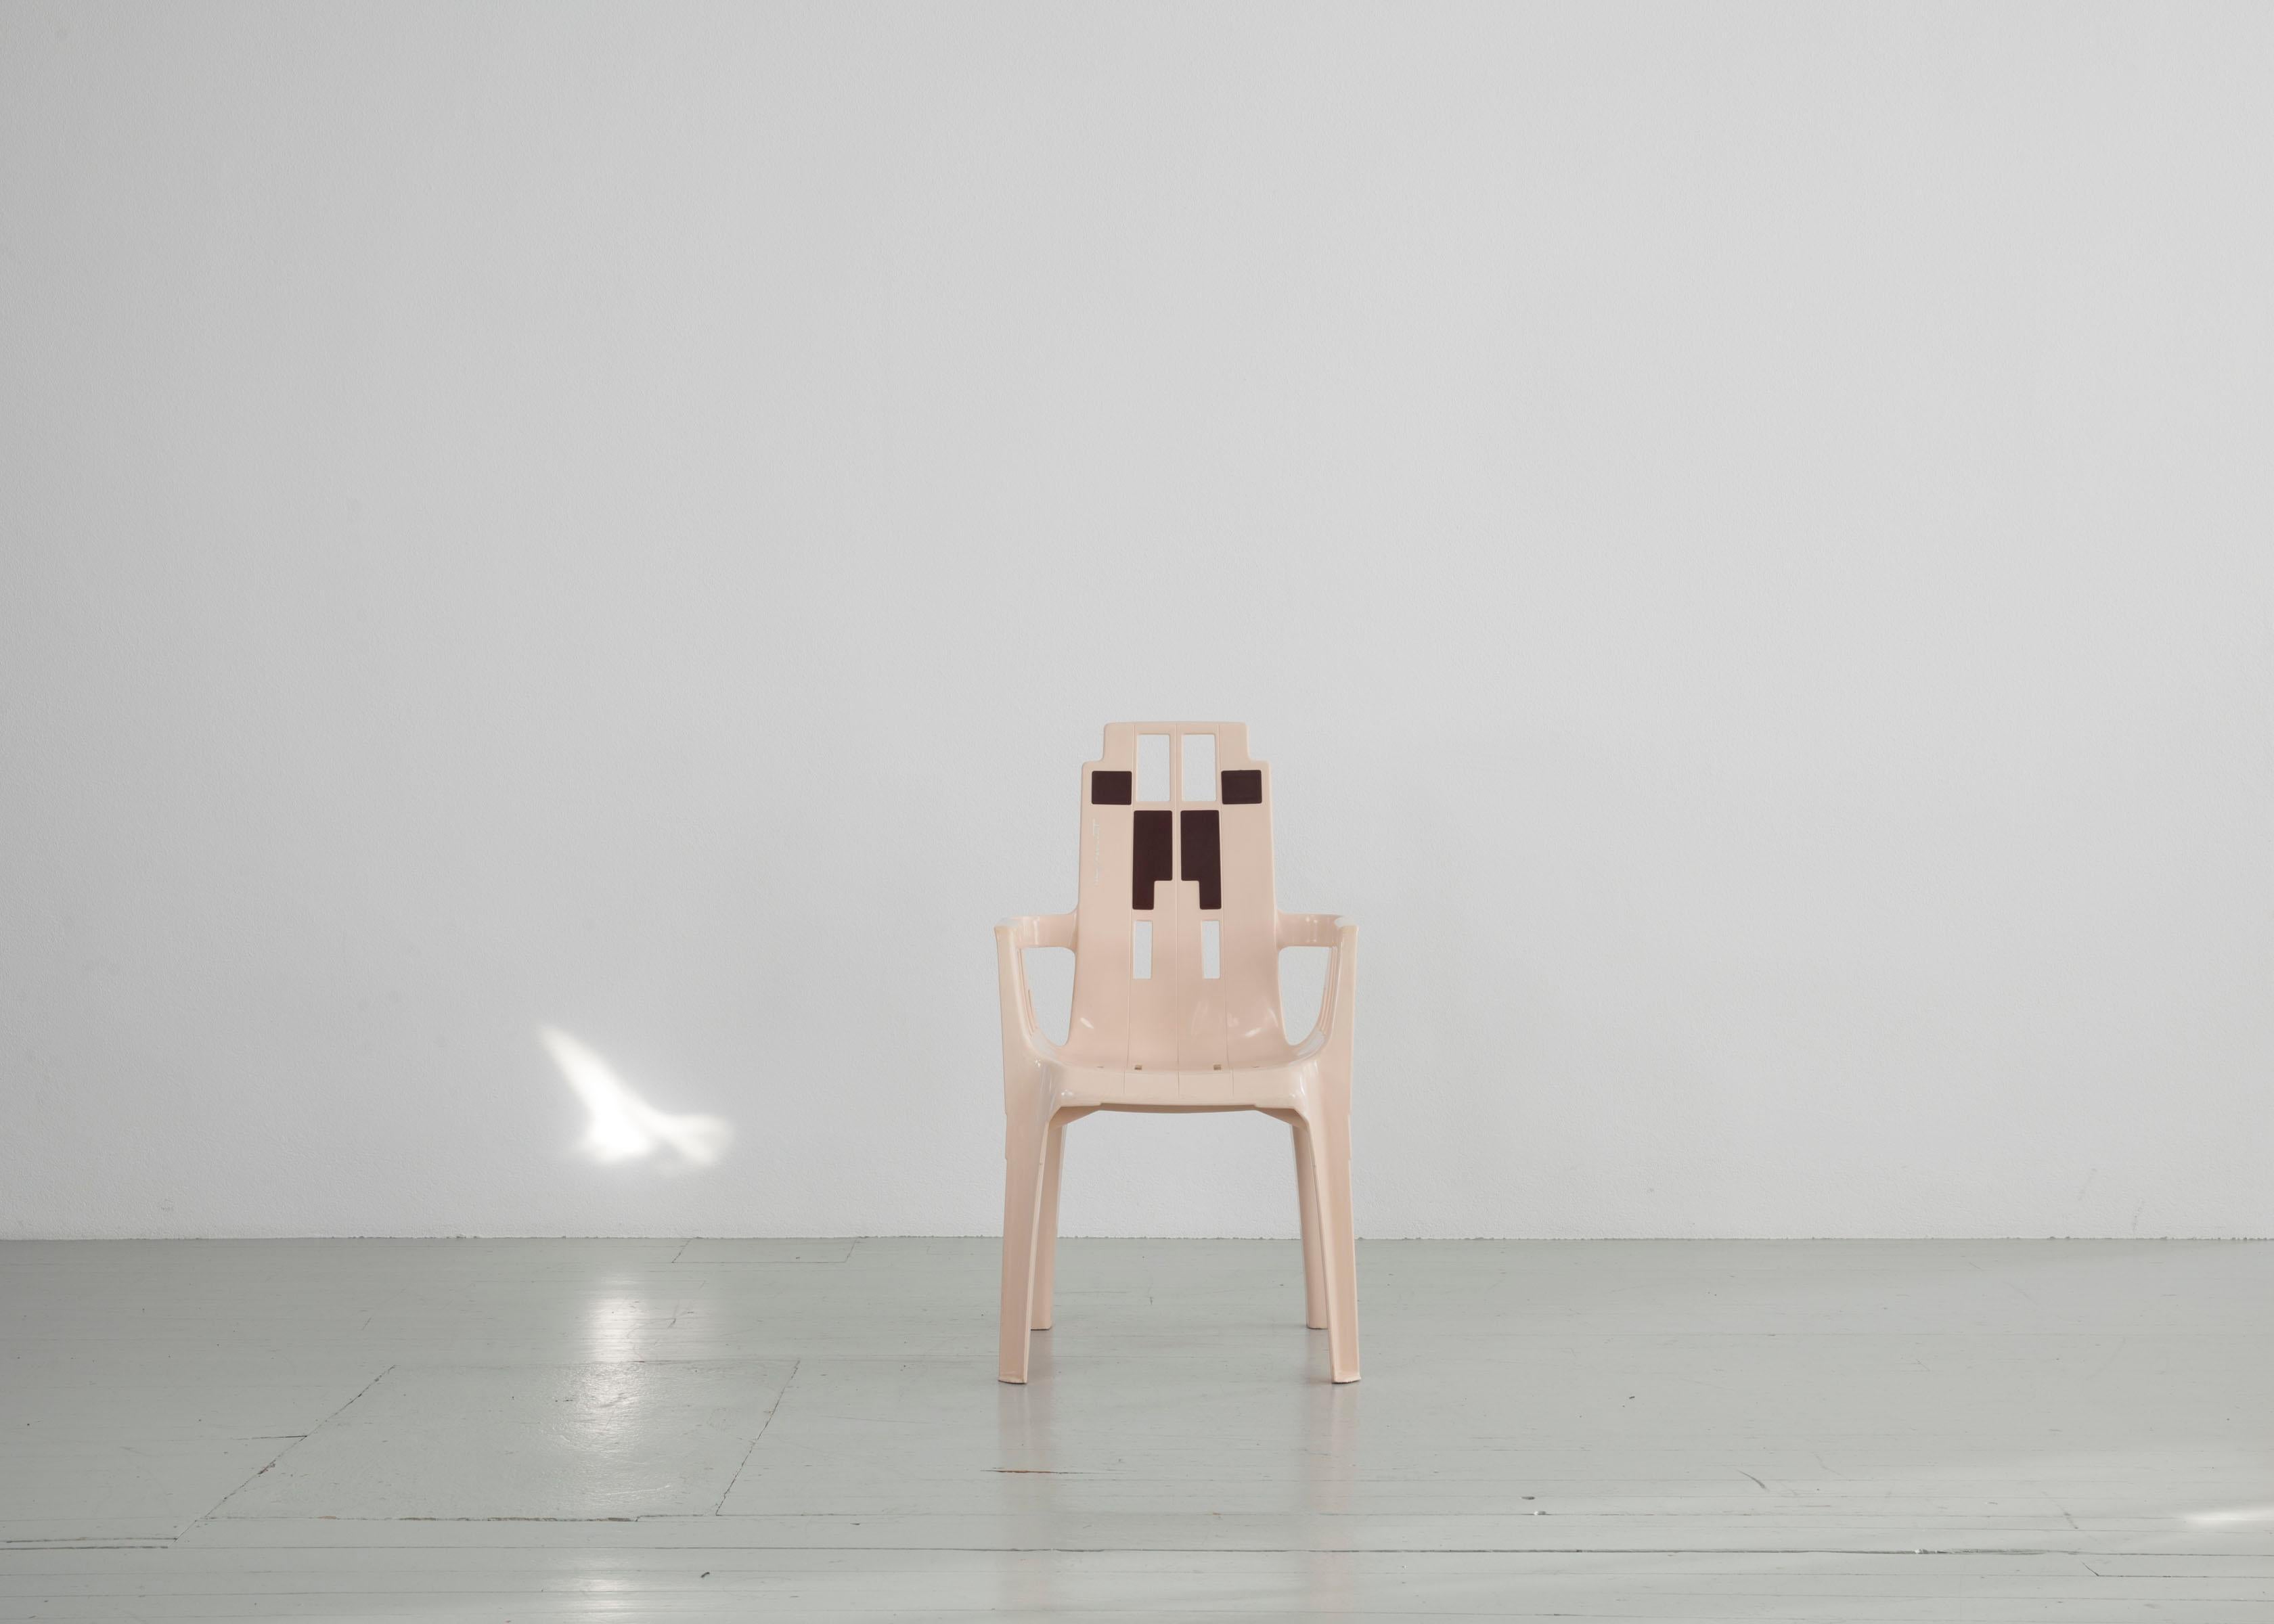 Cet ensemble de 4 chaises empilables en plastique a été conçu par Pierre Paulin pour Henry Massonet et fabriqué par STAMP en France en 1988. Les chaises se distinguent par les formes géométriques de leur dossier et de leurs accoudoirs. Le contraste